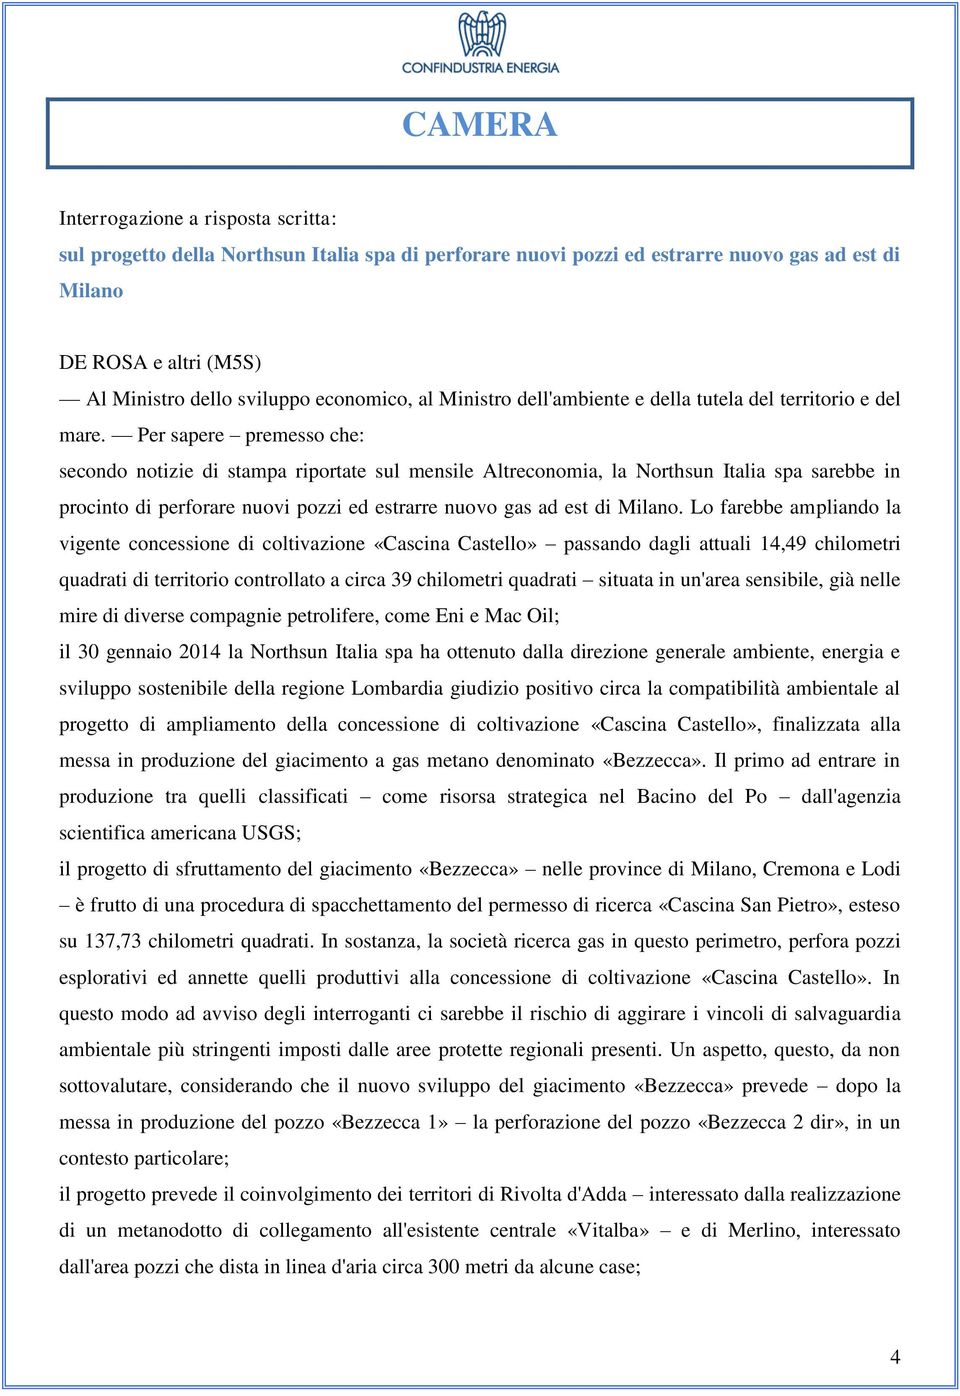 Per sapere premesso che: secondo notizie di stampa riportate sul mensile Altreconomia, la Northsun Italia spa sarebbe in procinto di perforare nuovi pozzi ed estrarre nuovo gas ad est di Milano.